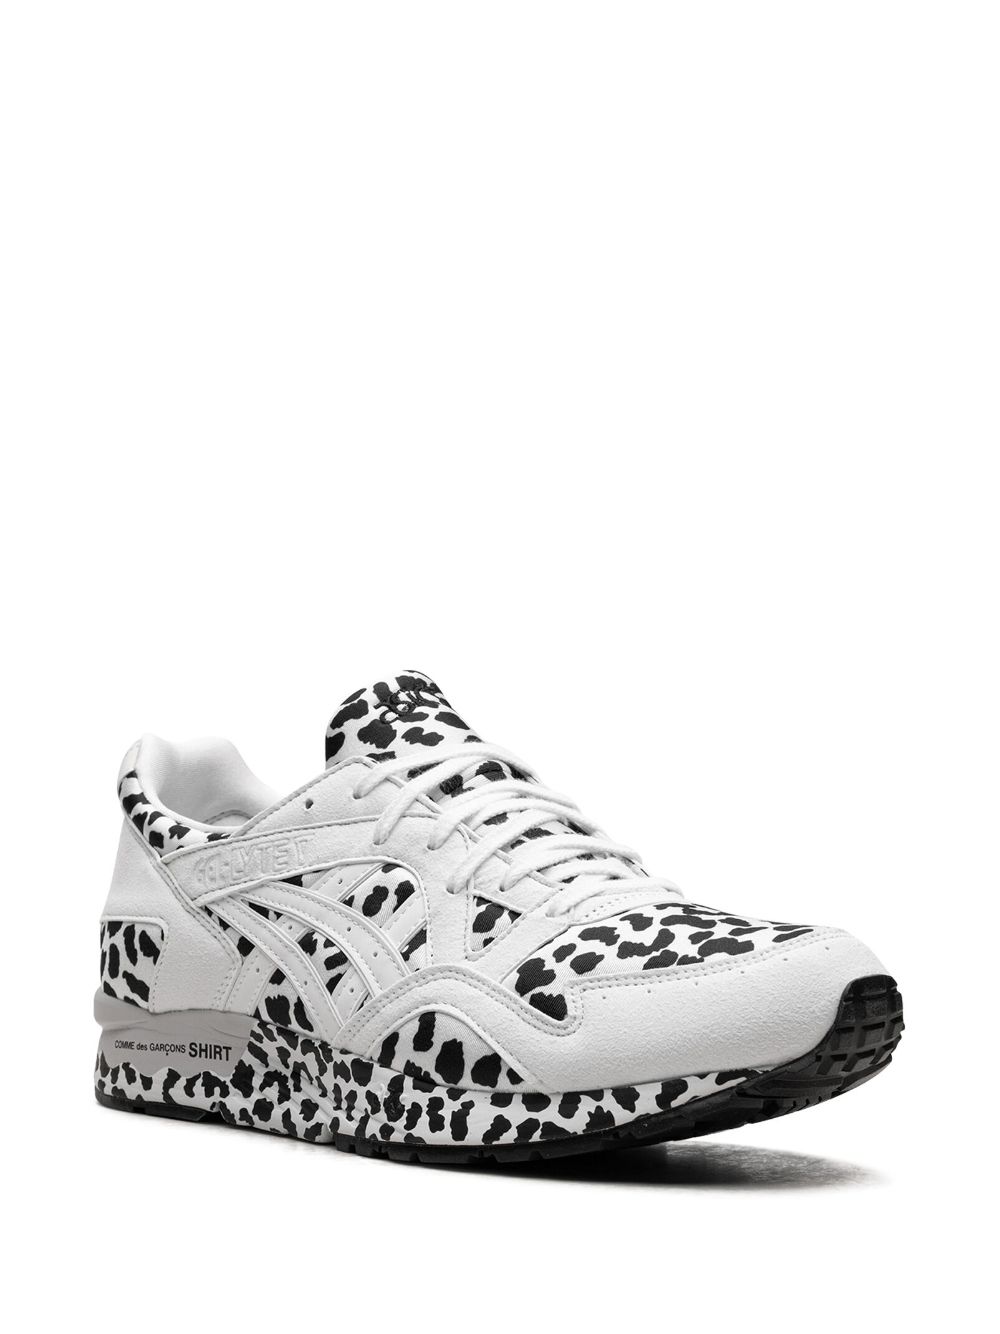 Shop Asics X Comme Des Garçons Shirt Gel Lyte 5 "white Leopard" Sneakers